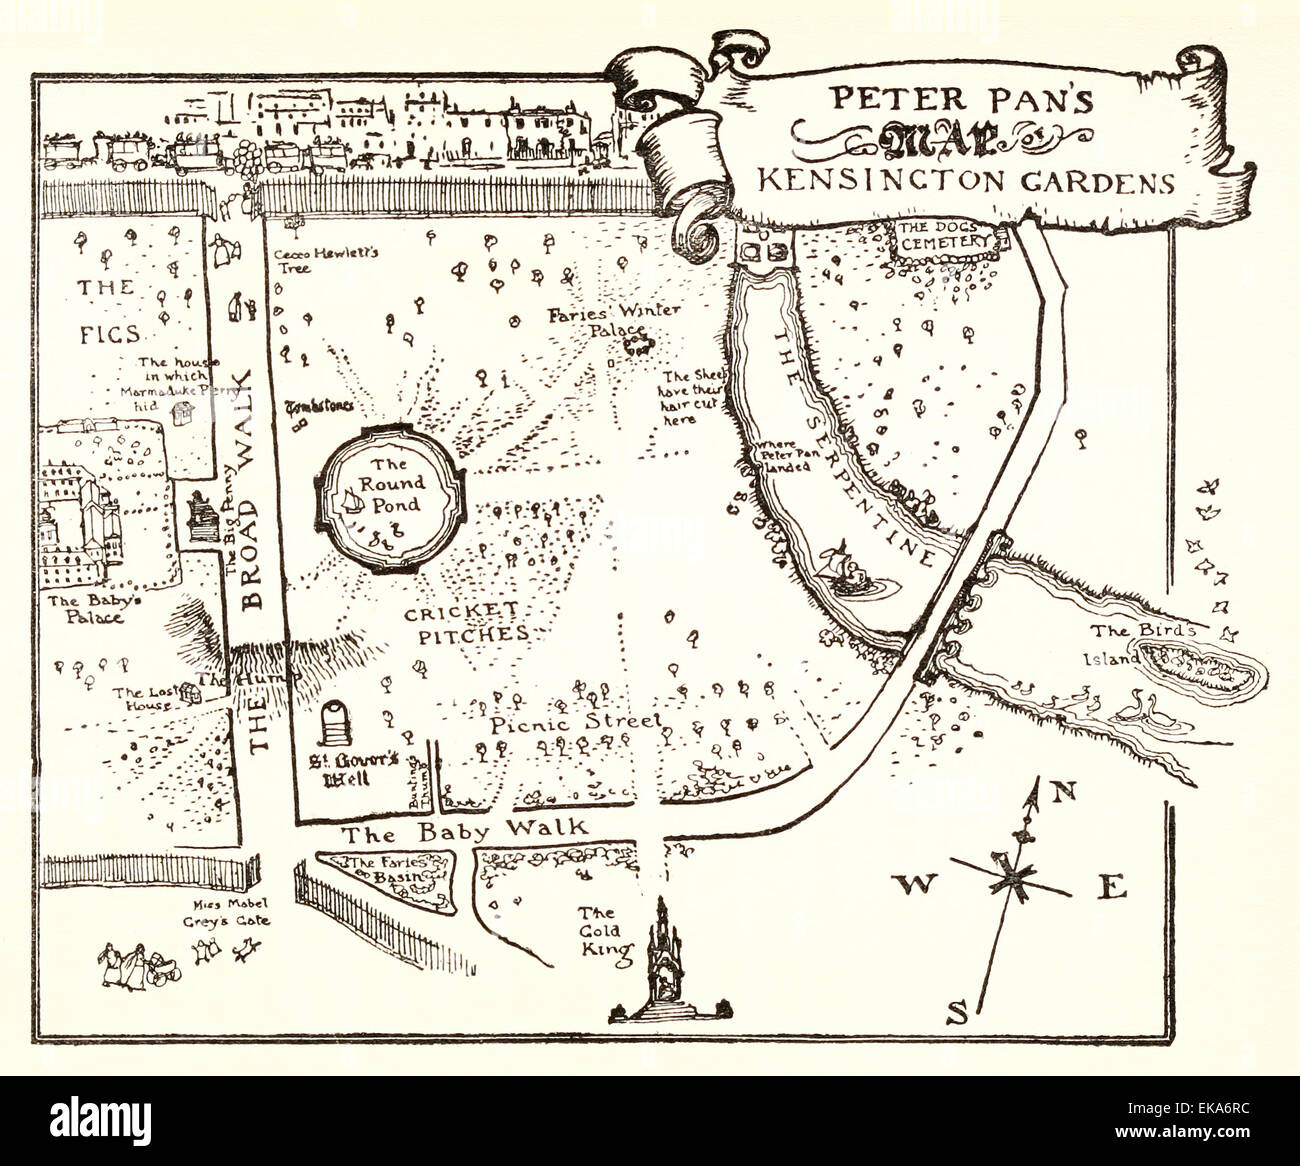 Peter Pan-Karte von Kensington Gardens - Illustration von Arthur Rackham (1867-1939) aus "Peter Pan in den Kensington Gardens' von j.m. Barrie (1860-1937). Siehe Beschreibung Stockfoto